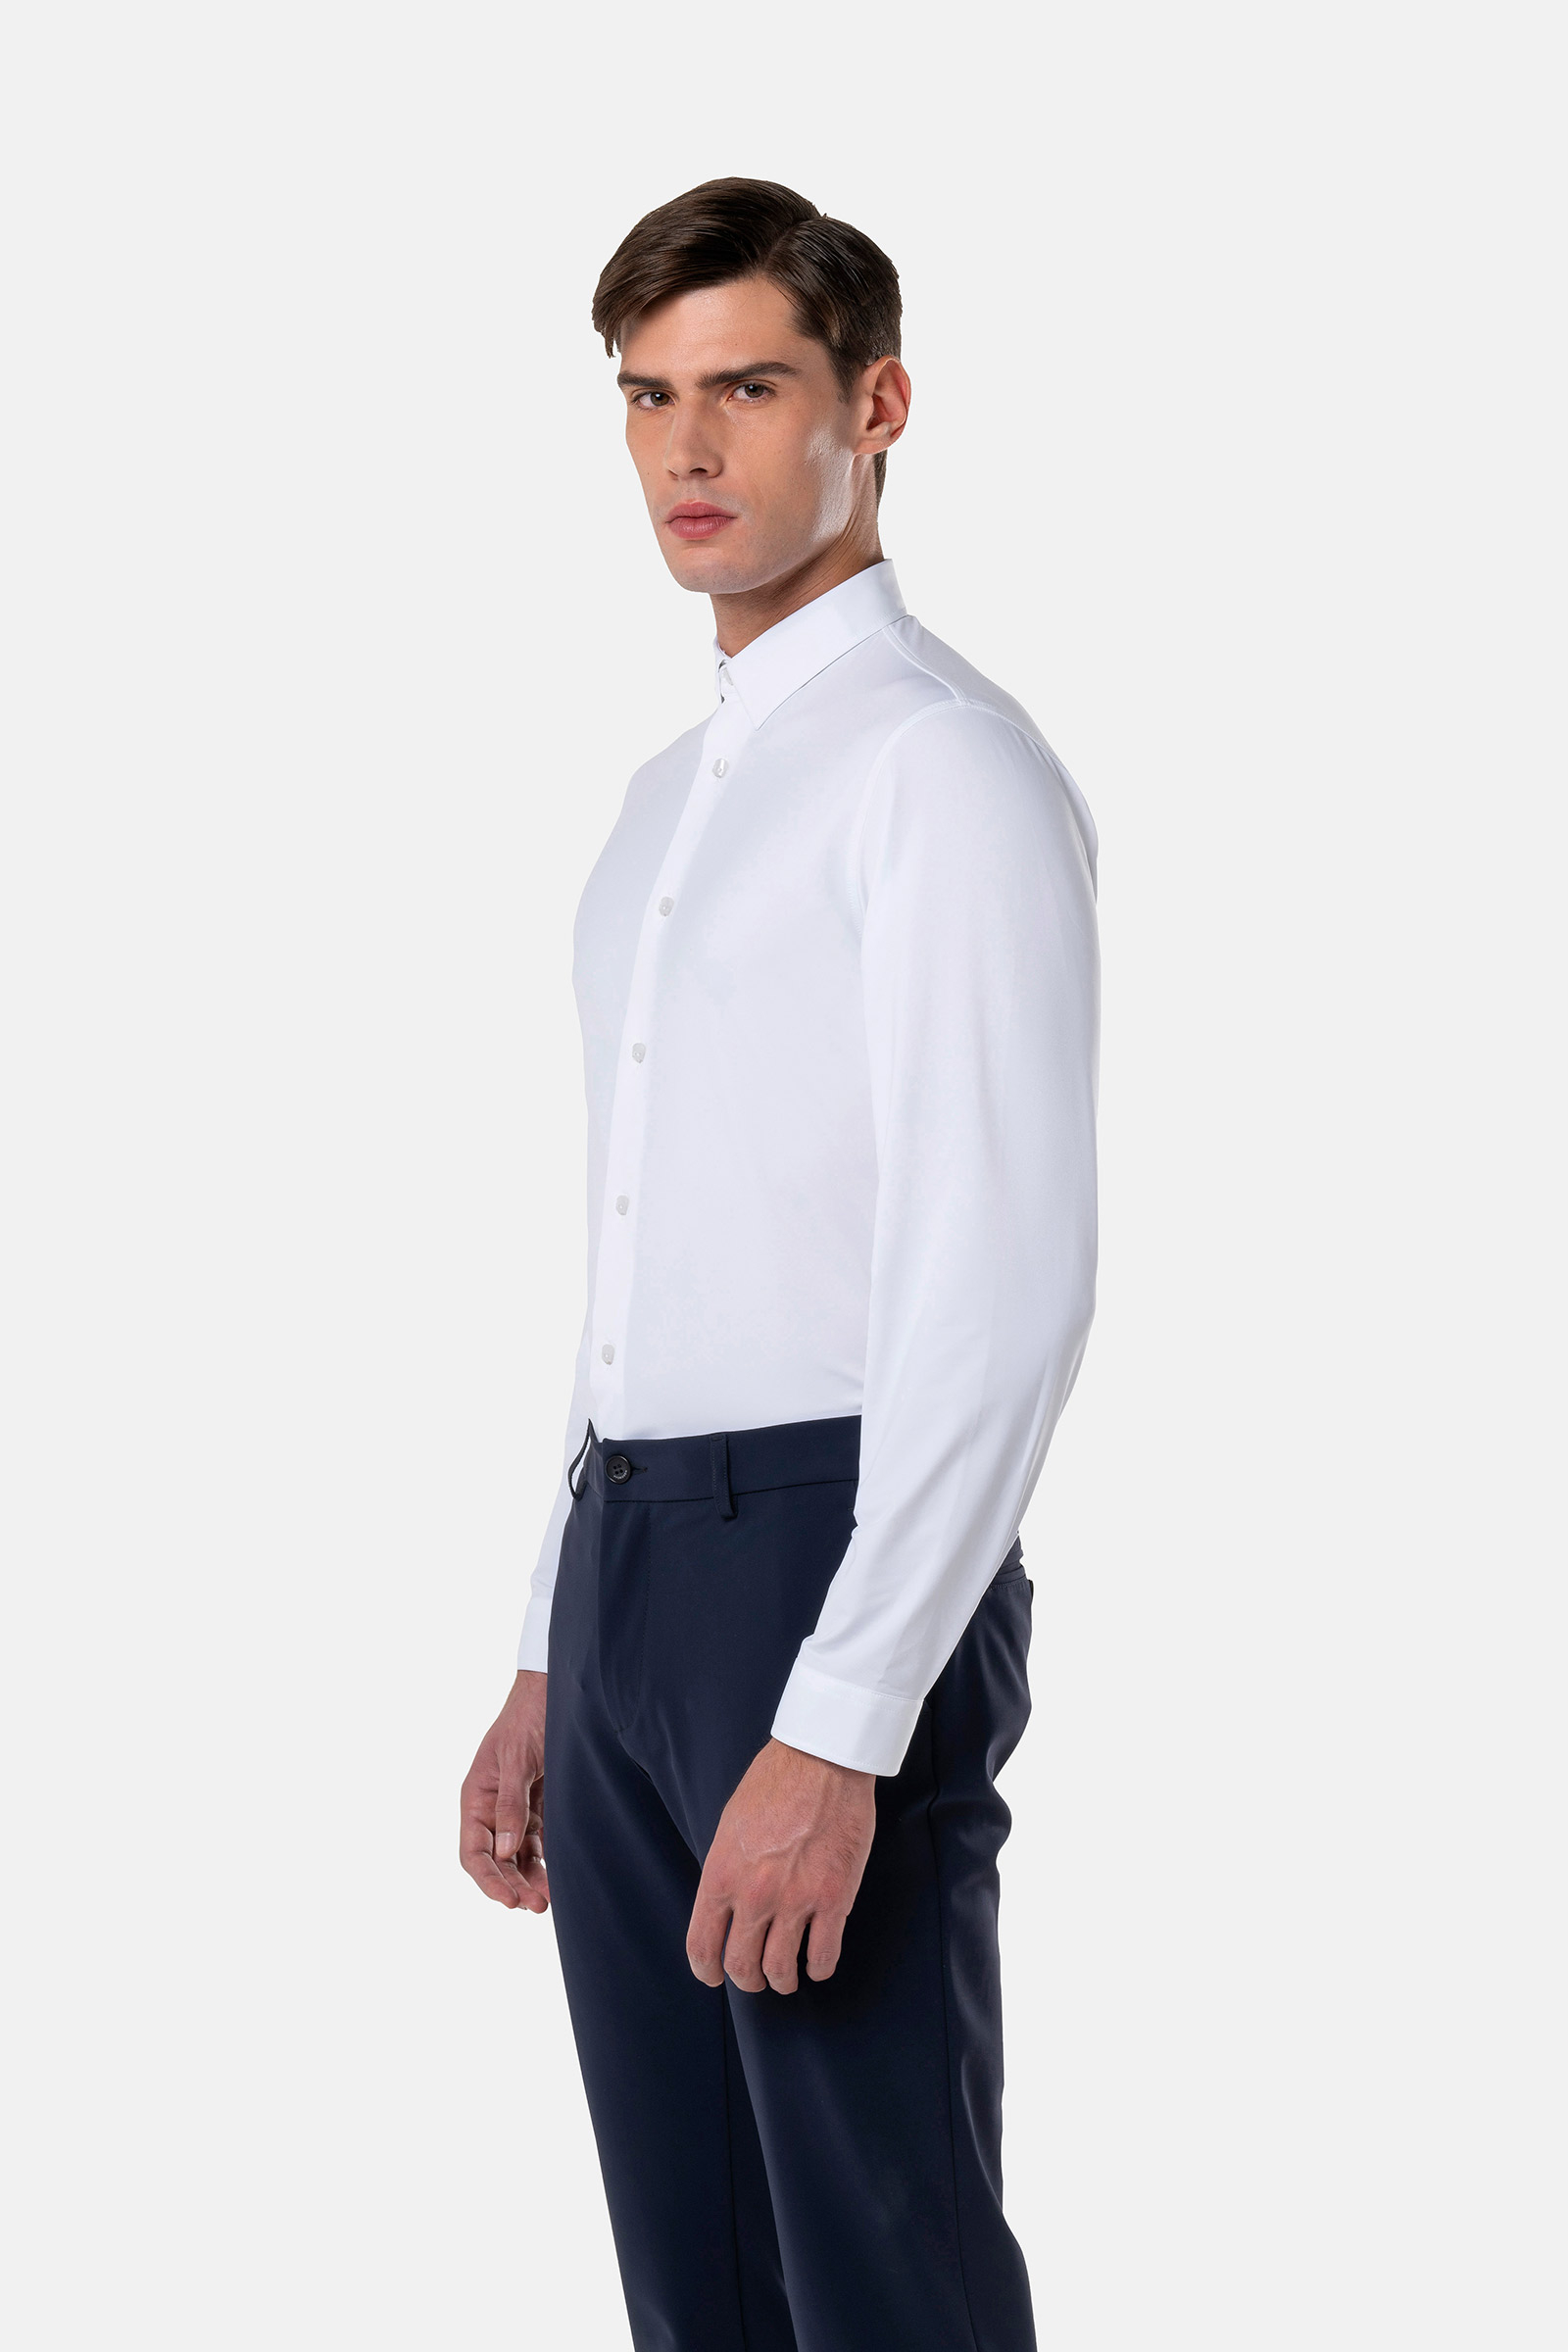 CYBER SHIRT - WHITE OXFORD - Hydrogen - Luxury Sportwear